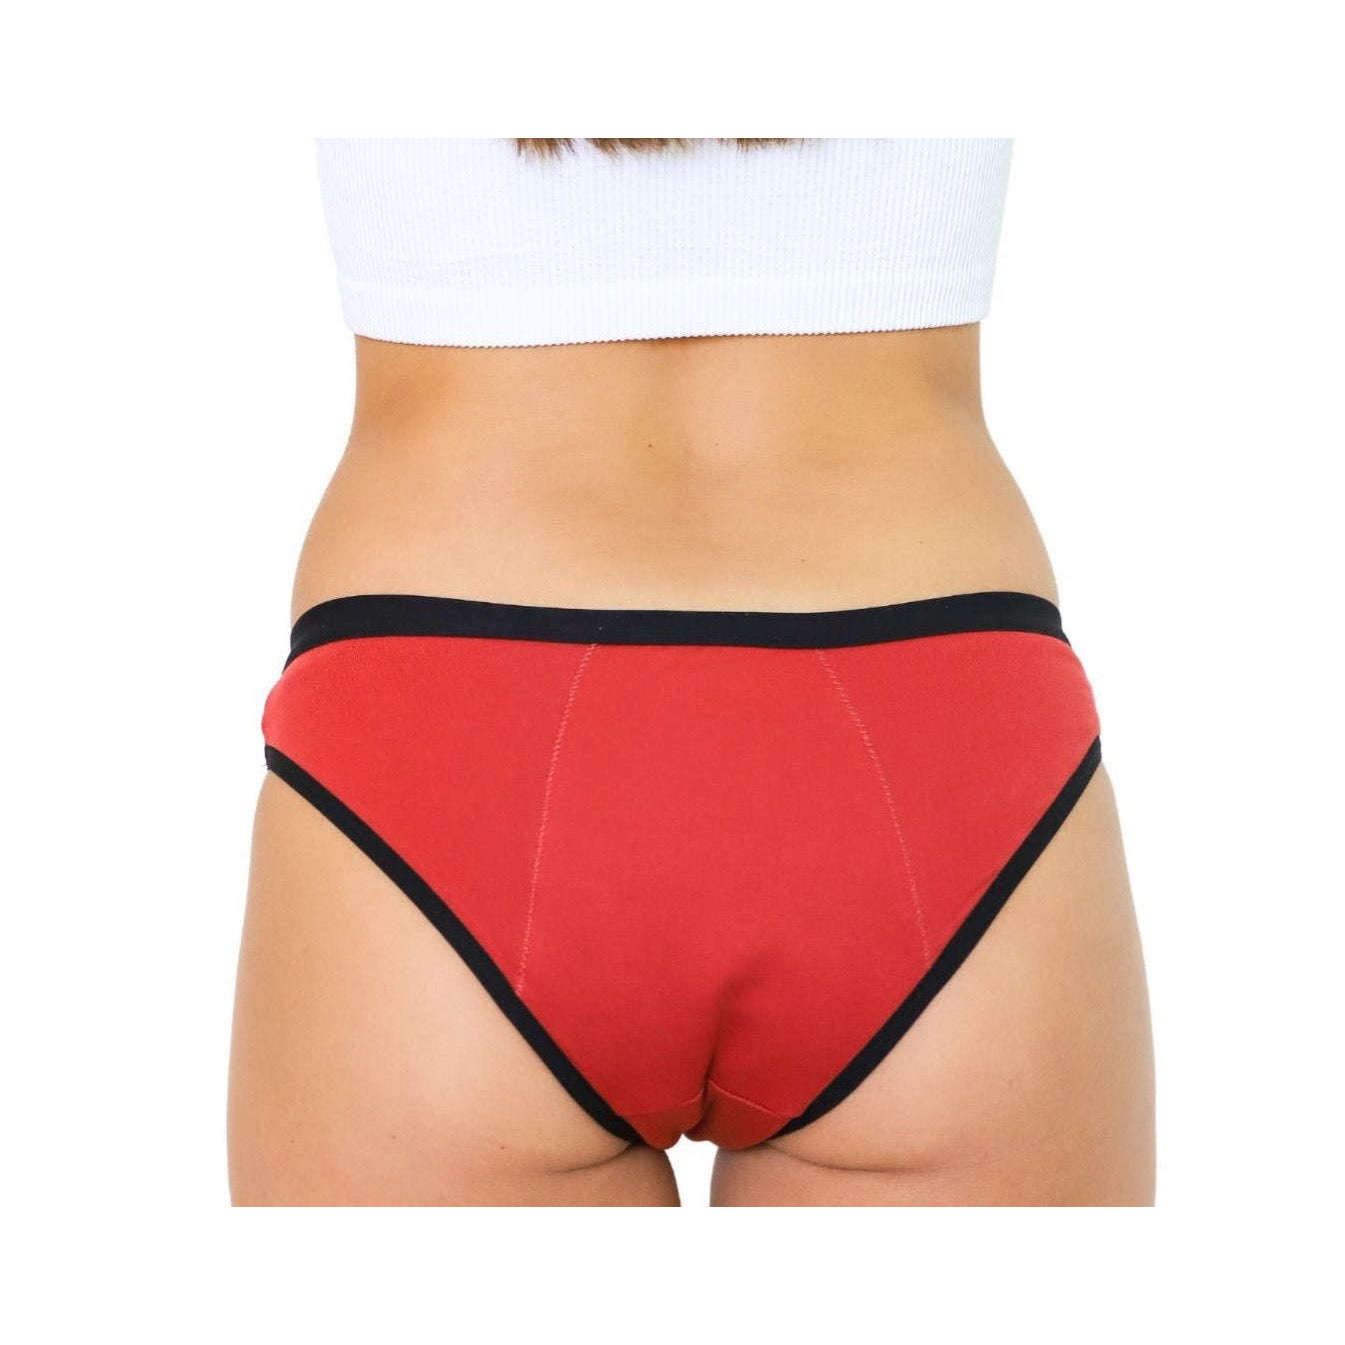 Cotton Period Underwear - Red- Moderate – MyNickerBot